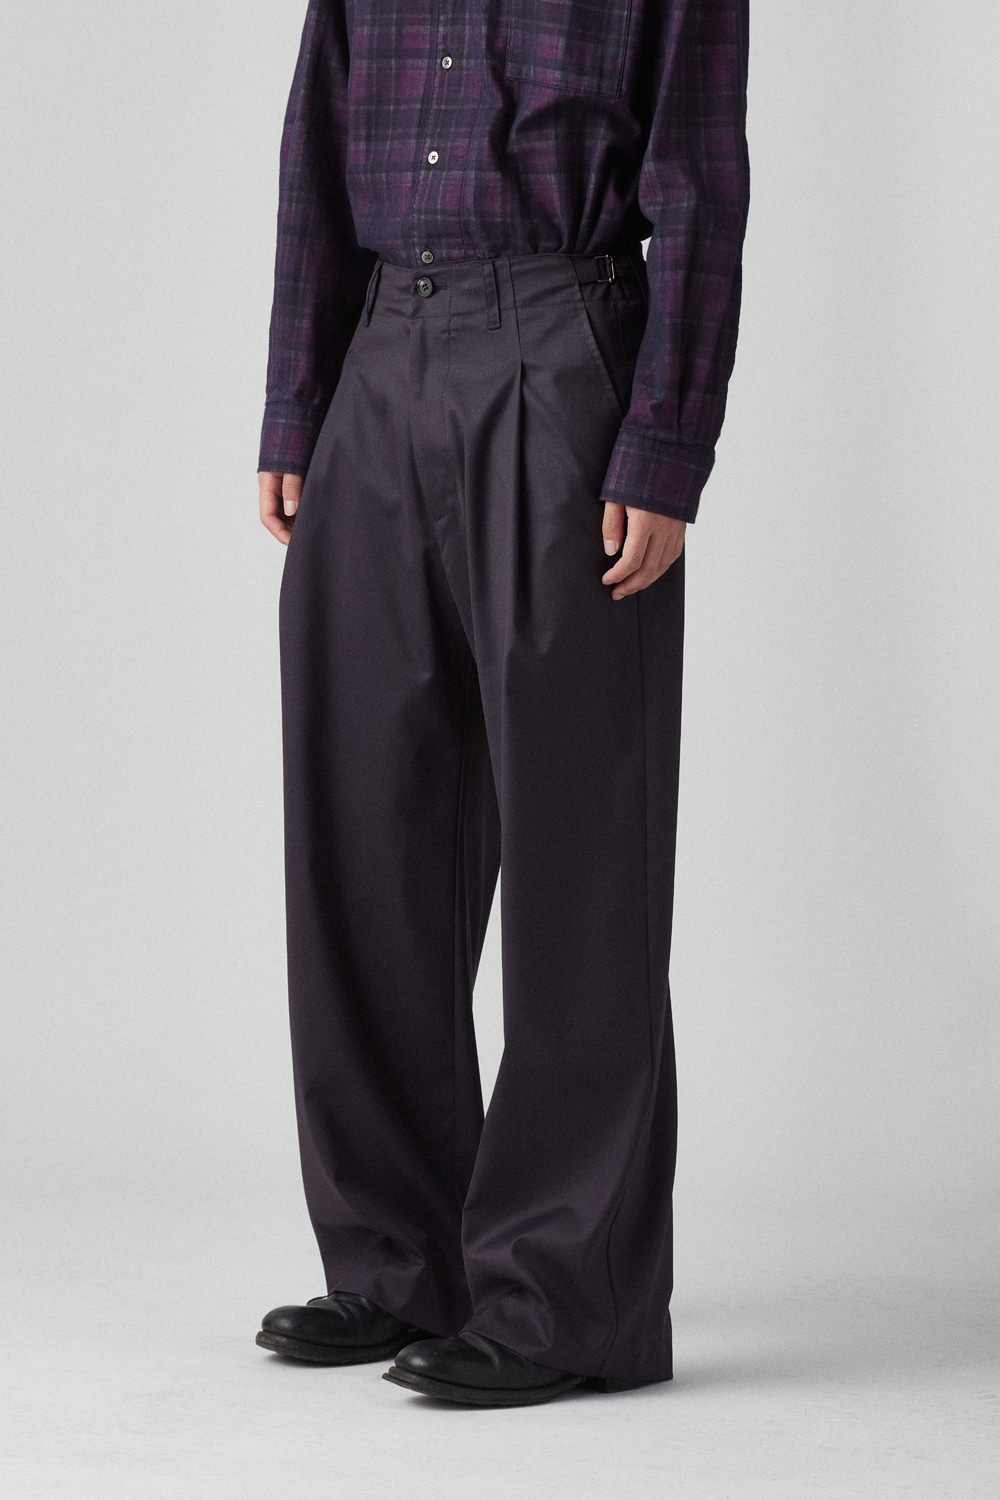 Deep Pleats Trousers Purple Charcoal Wool